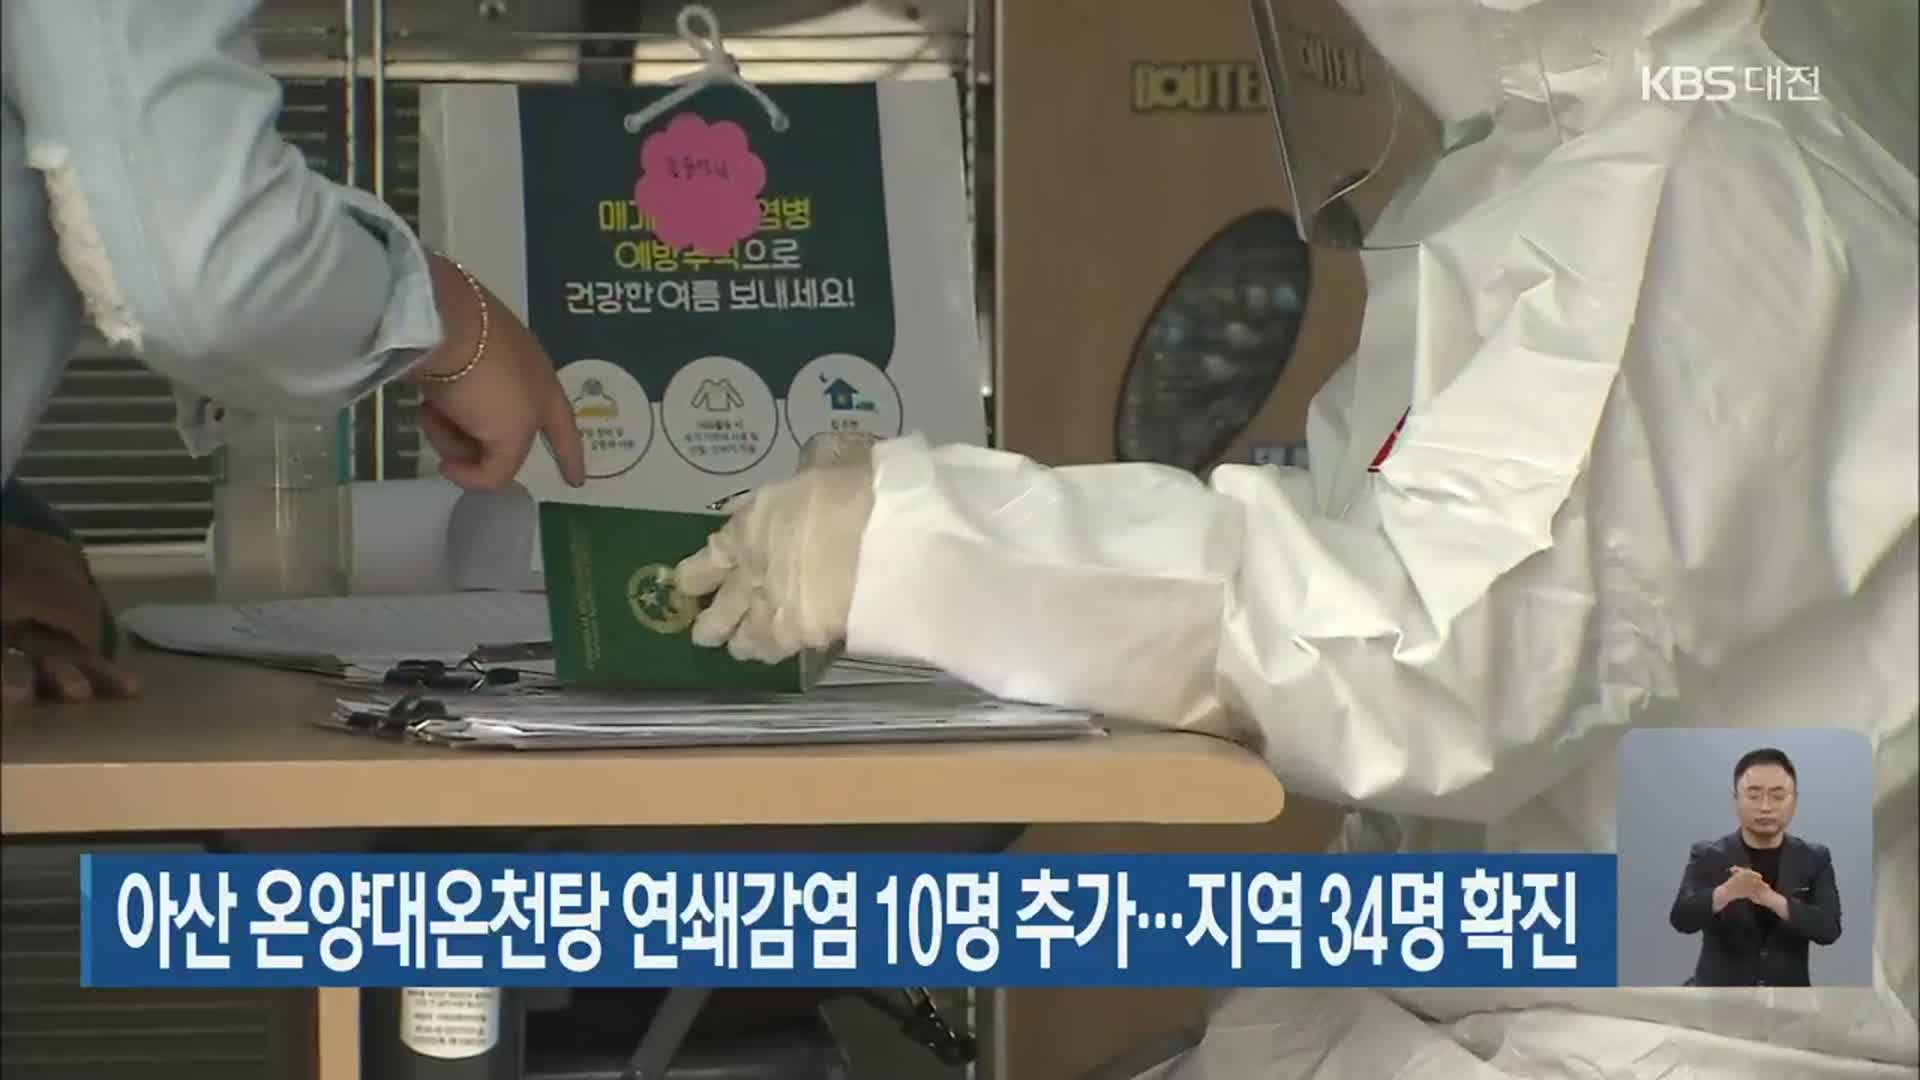 아산 온양대온천탕 연쇄감염 10명 추가…지역 34명 확진